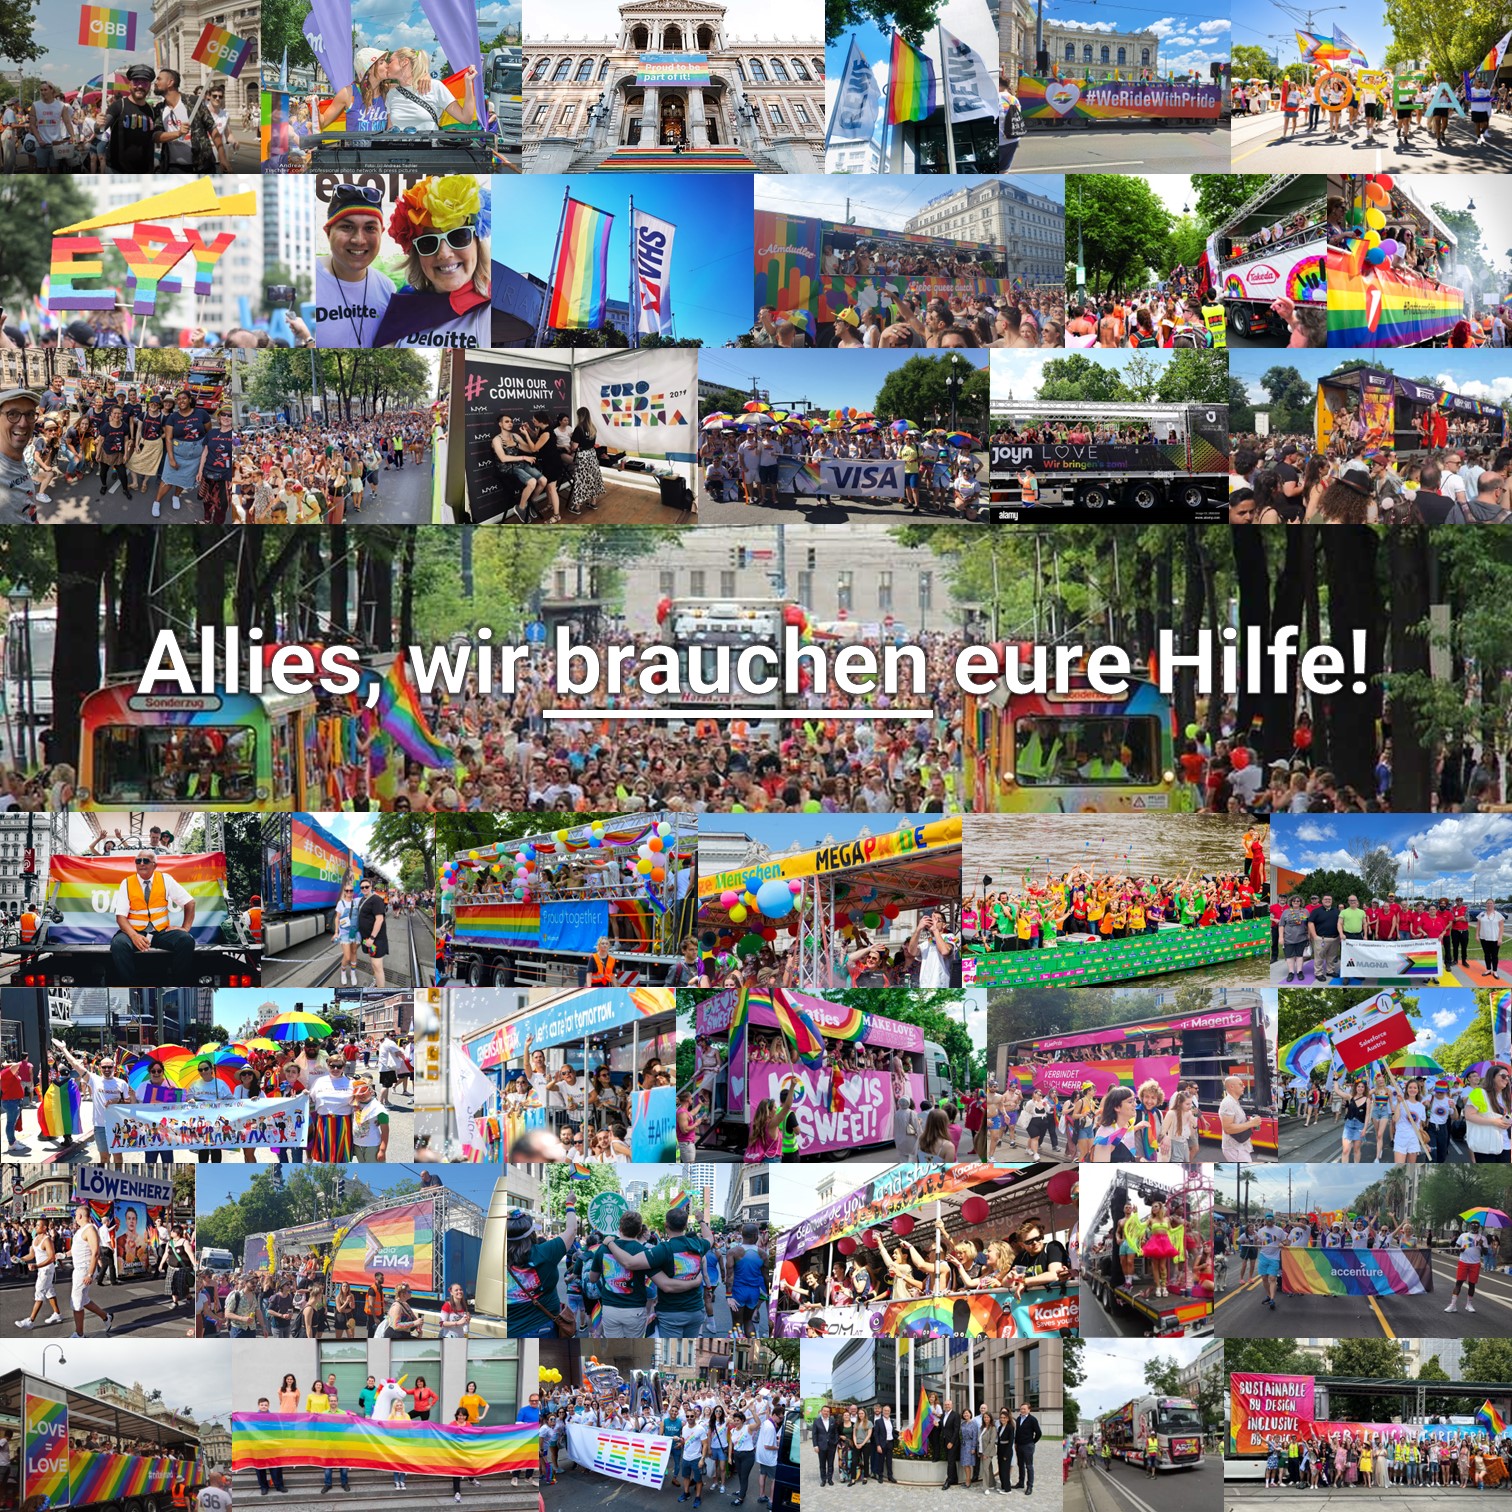 Collage aus Fotos von Unternehmen die mit Fußgruppen und Trucks auf der Pride Teilenehmen, darüber der Text "Allies, wir brauchen eure Hilfe!"